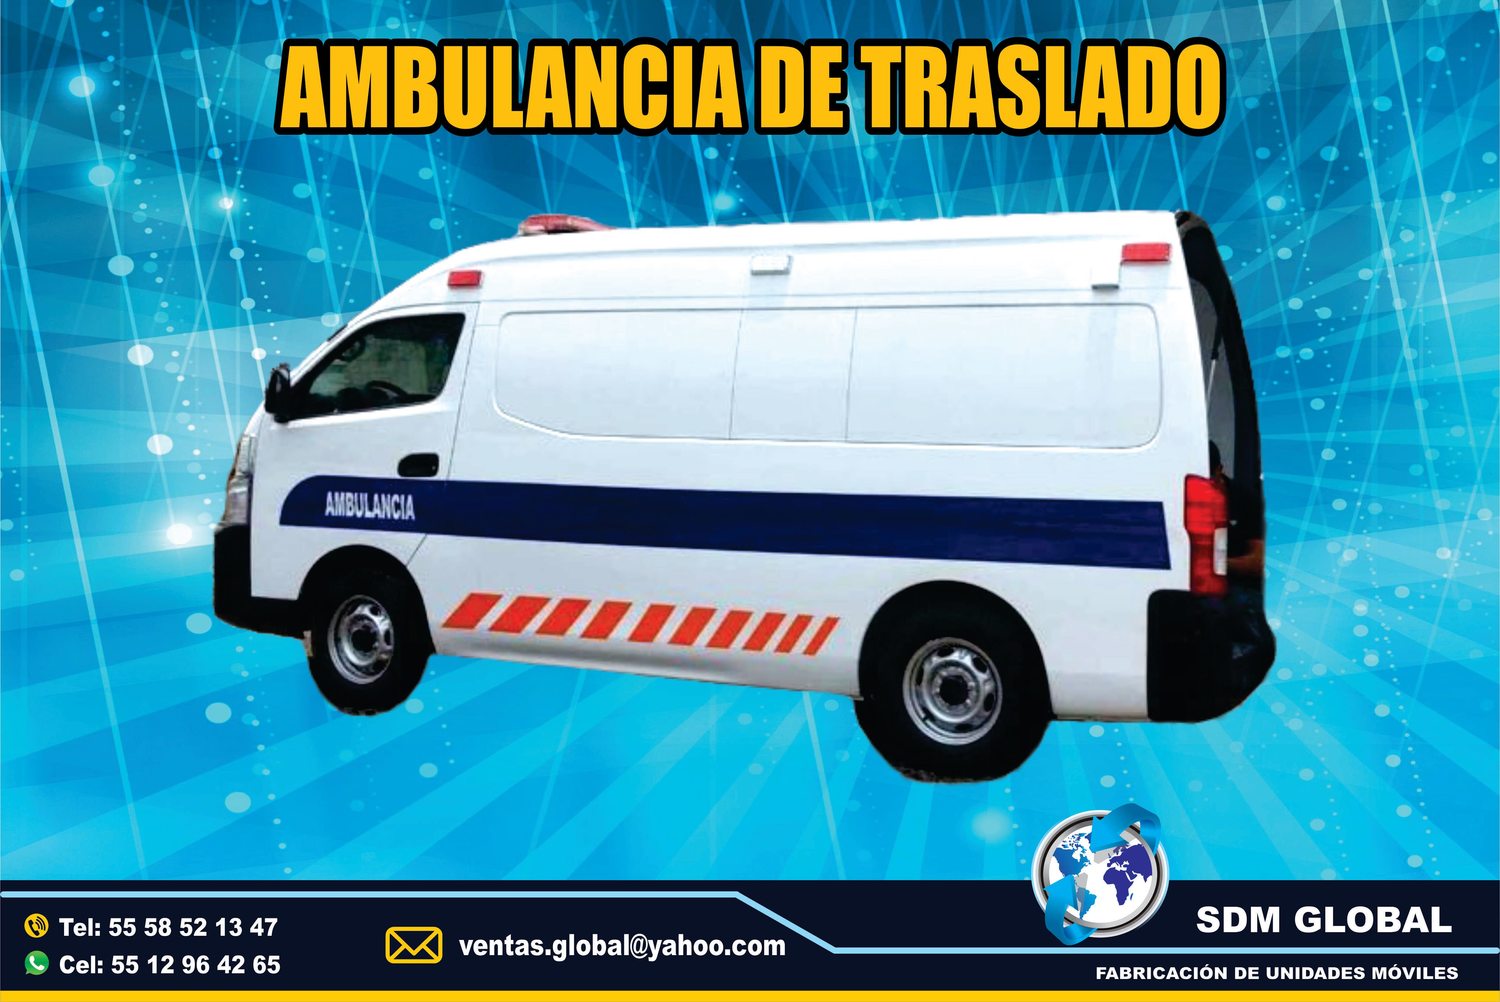 <span style="font-weight: bold;">Fabricacion de  Ambulancis de Traslado en Mexico</span><br>